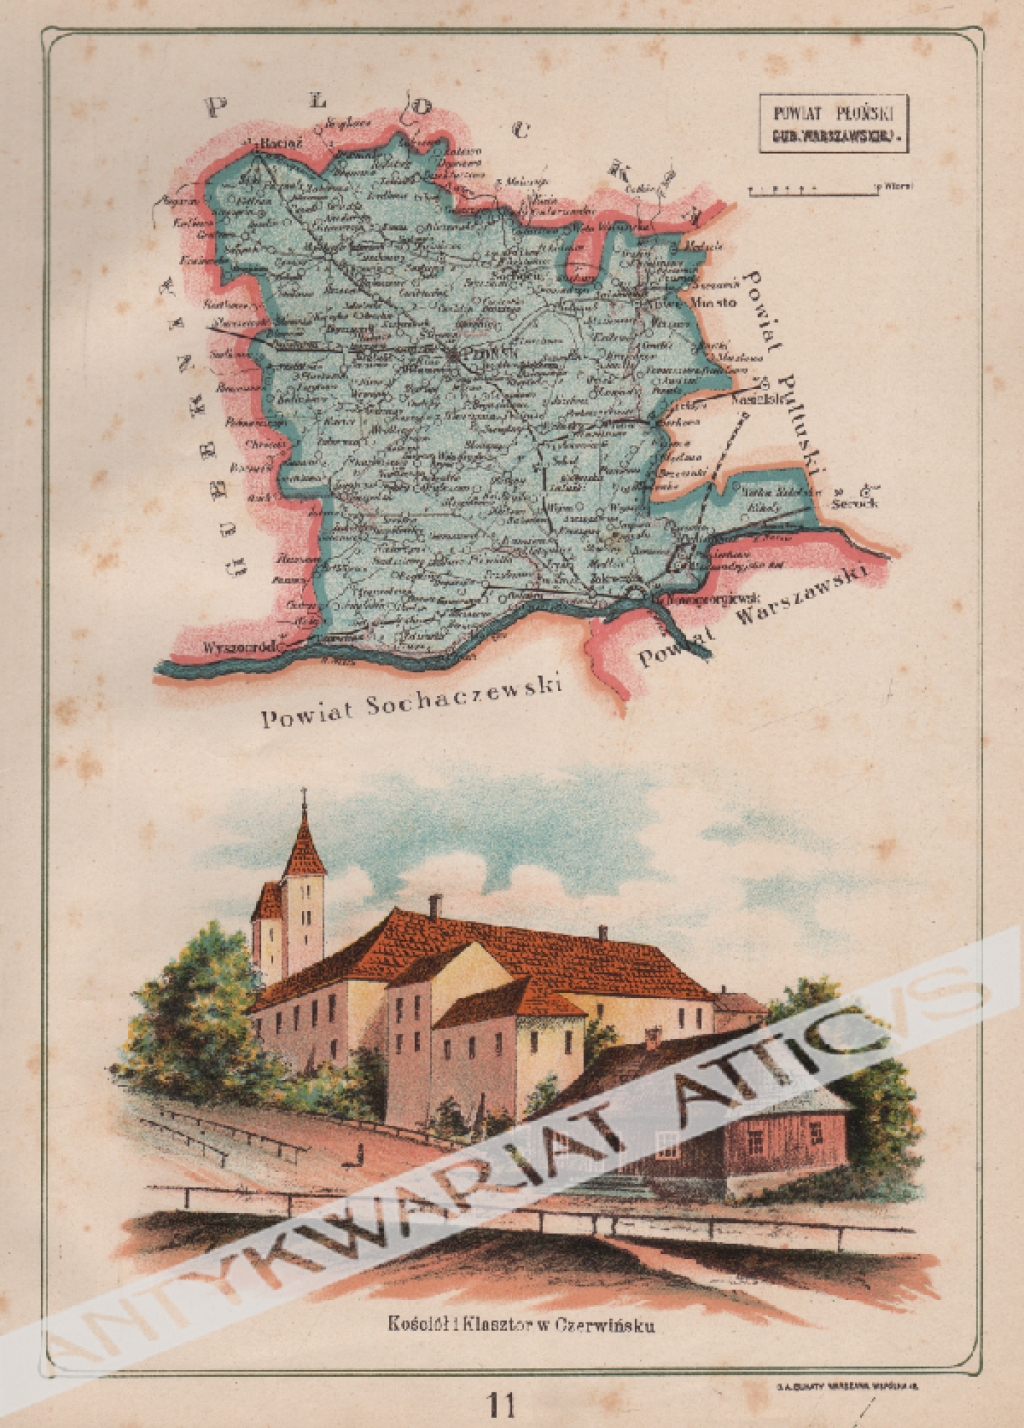 [mapa, 1907] Powiat Płoński Gub. Warszawskiej